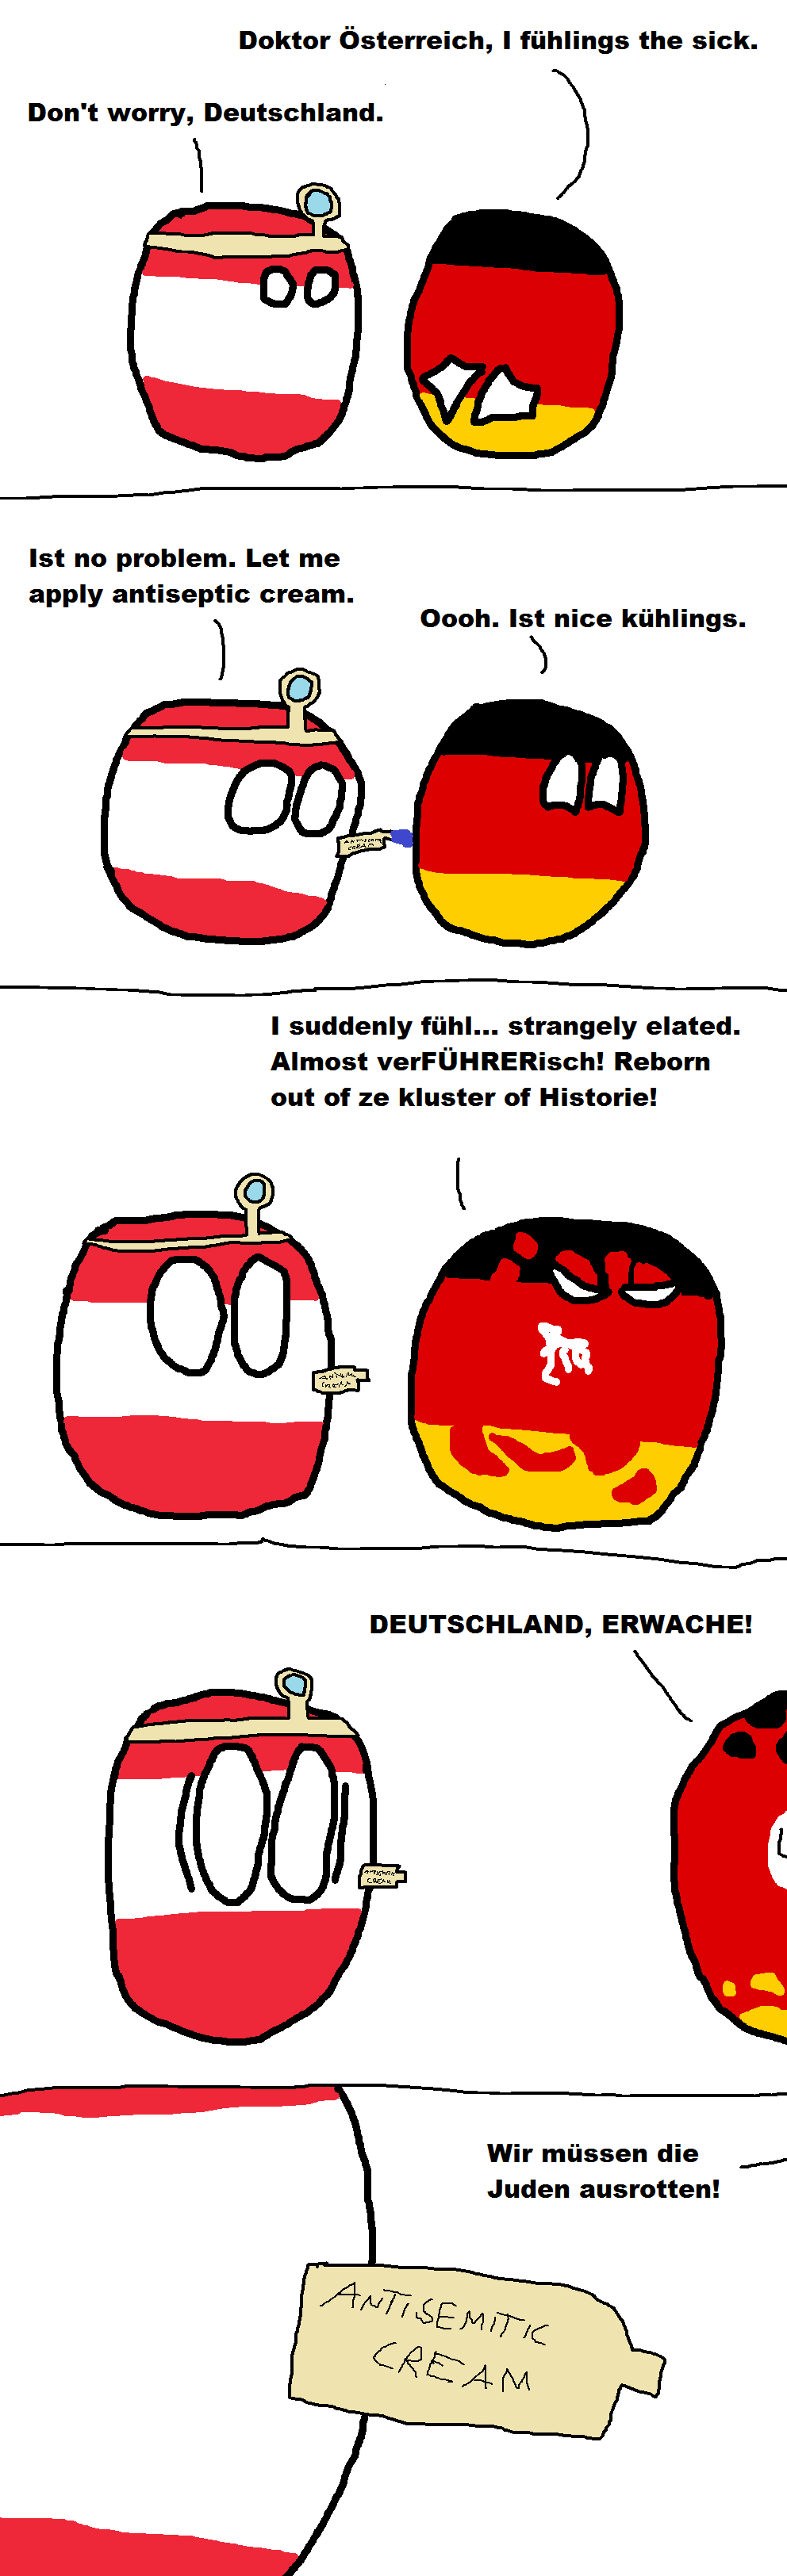 Dr. Österreich's Mistake